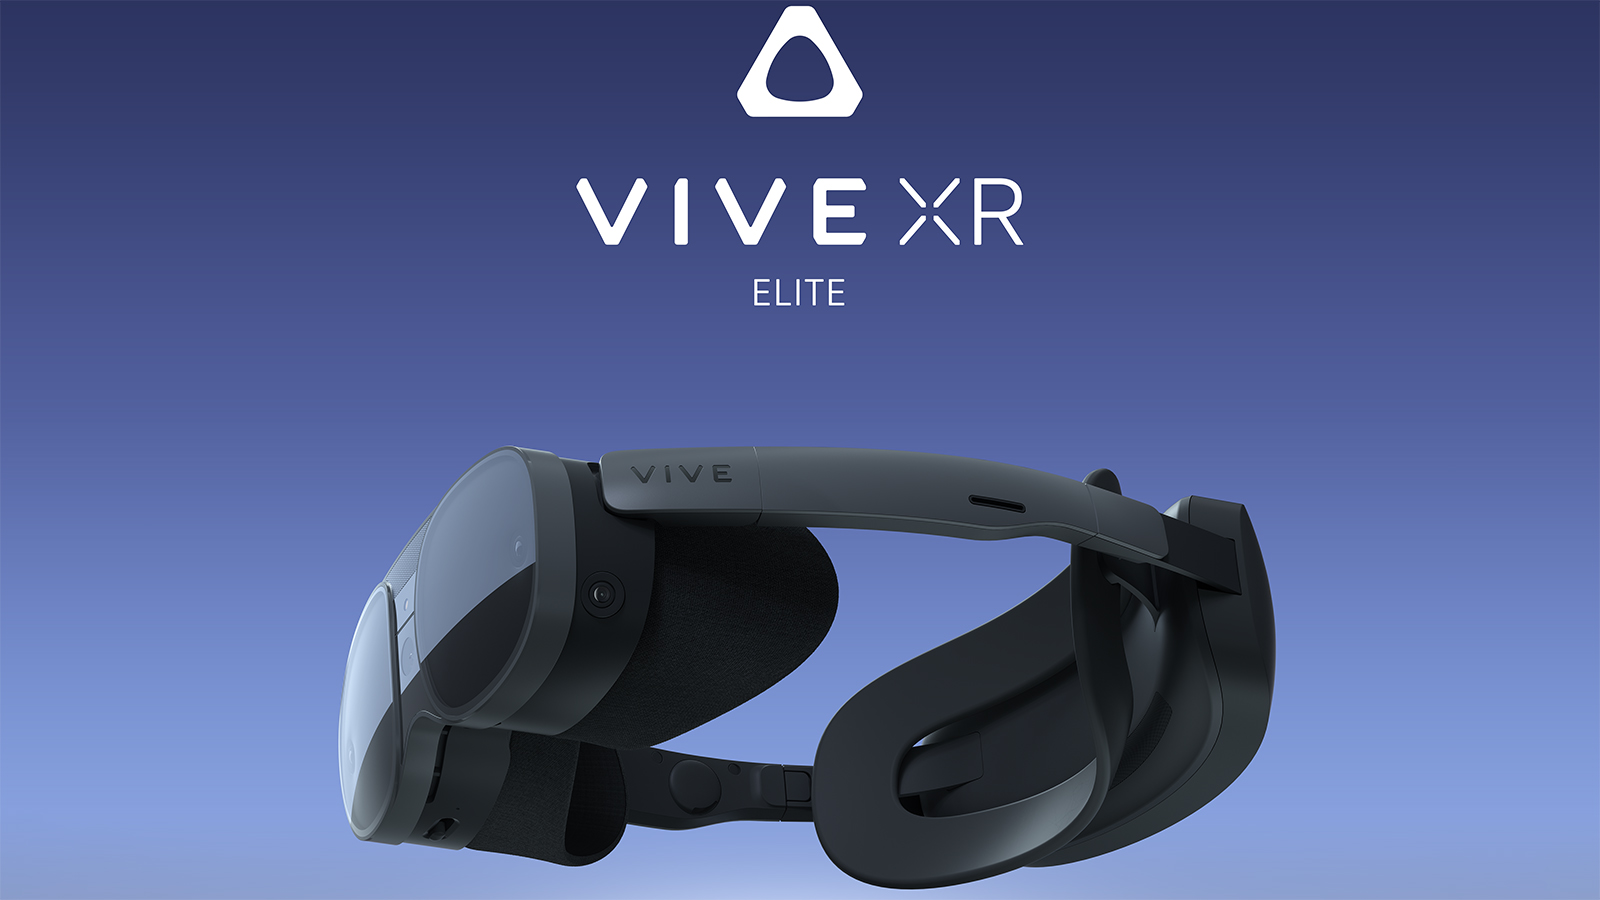 HTC VIVE XR Elite : que trouve-t-on dans ce nouveau casque haut de gamme ?